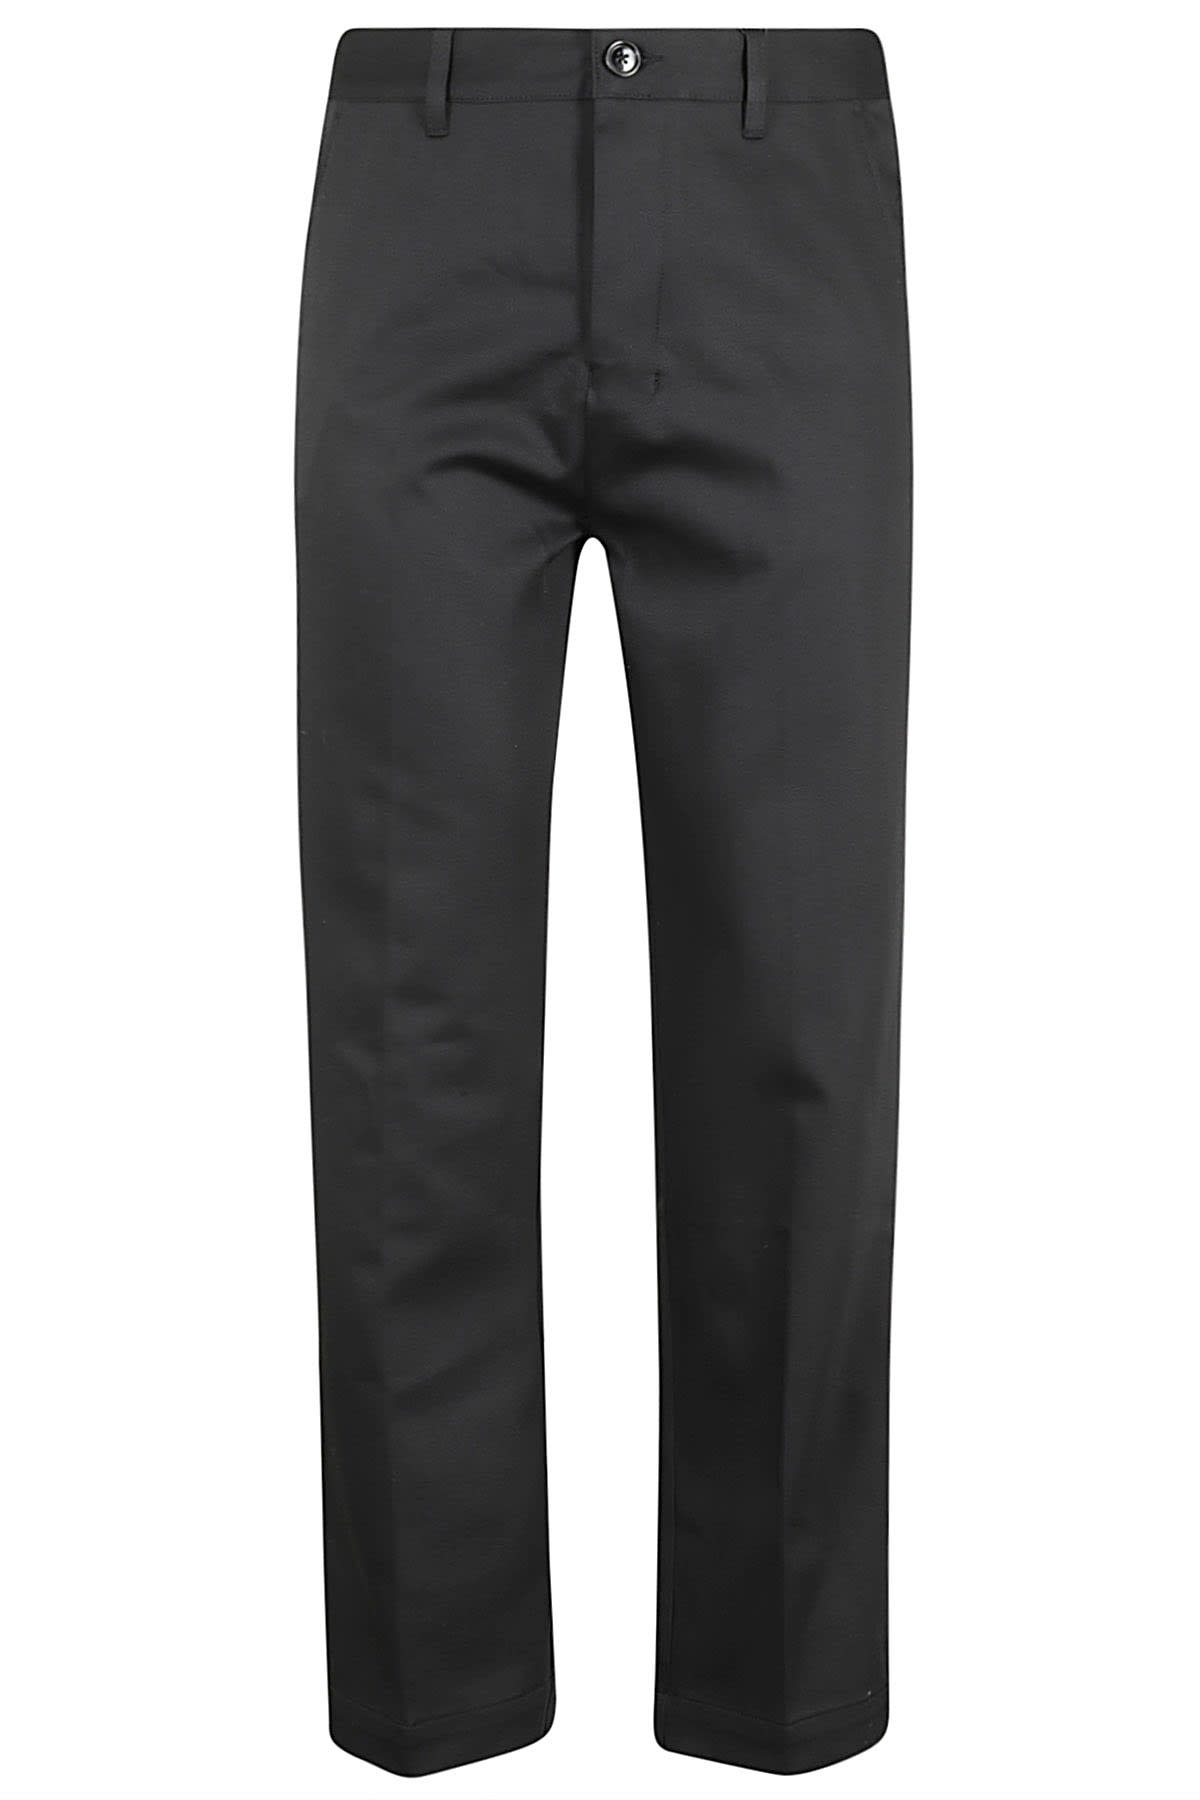 Shop Ami Alexandre Mattiussi Straight Chino Trousers In Black